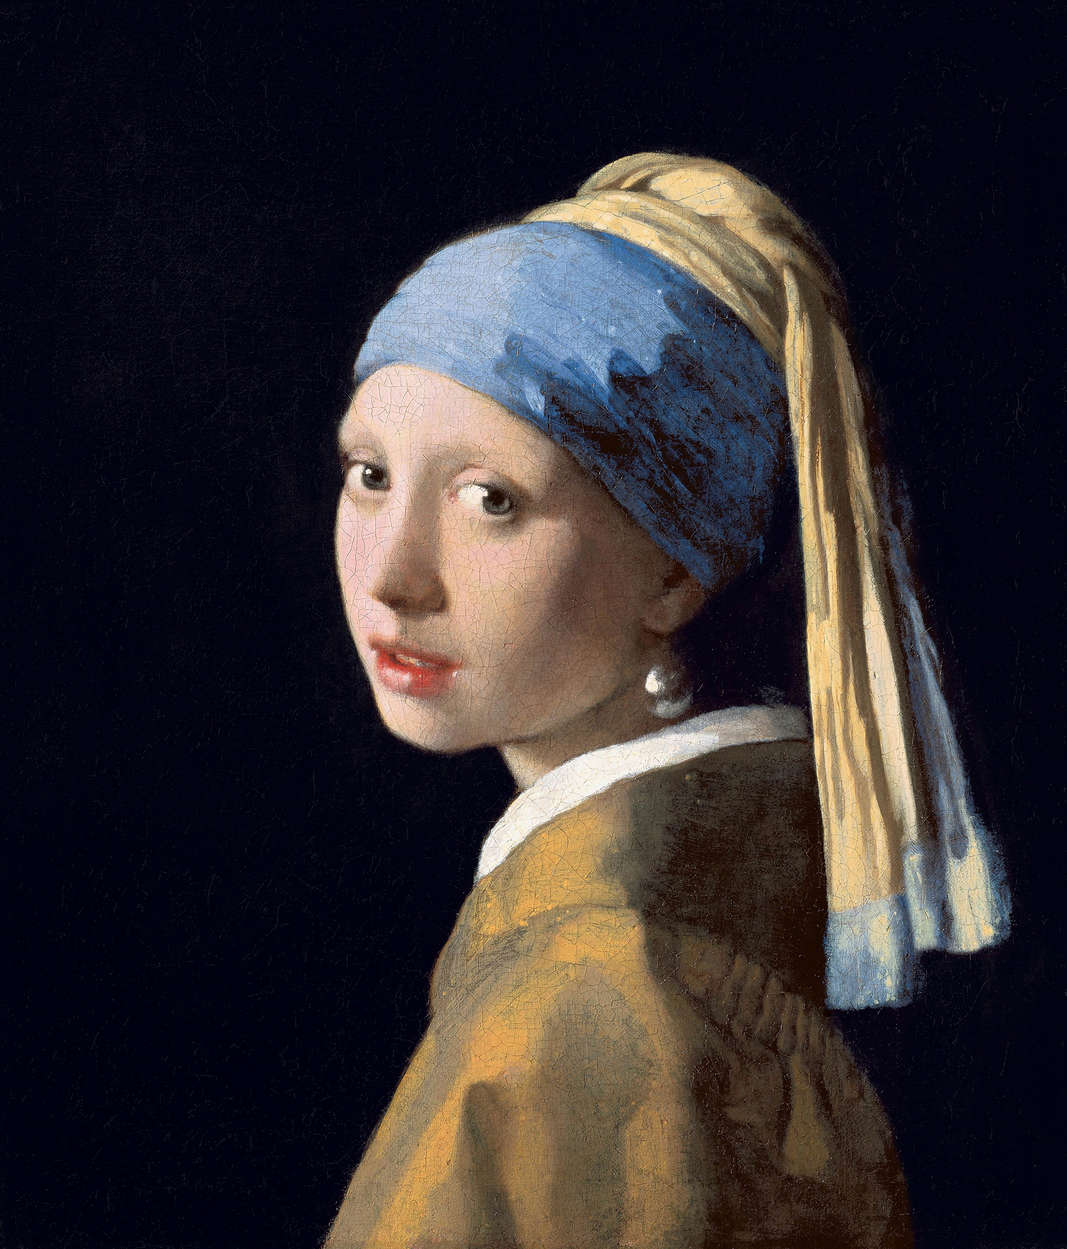             Papier peint panoramique "La jeune fille à la boucle d'oreille en perles" de Jan Vermeer
        